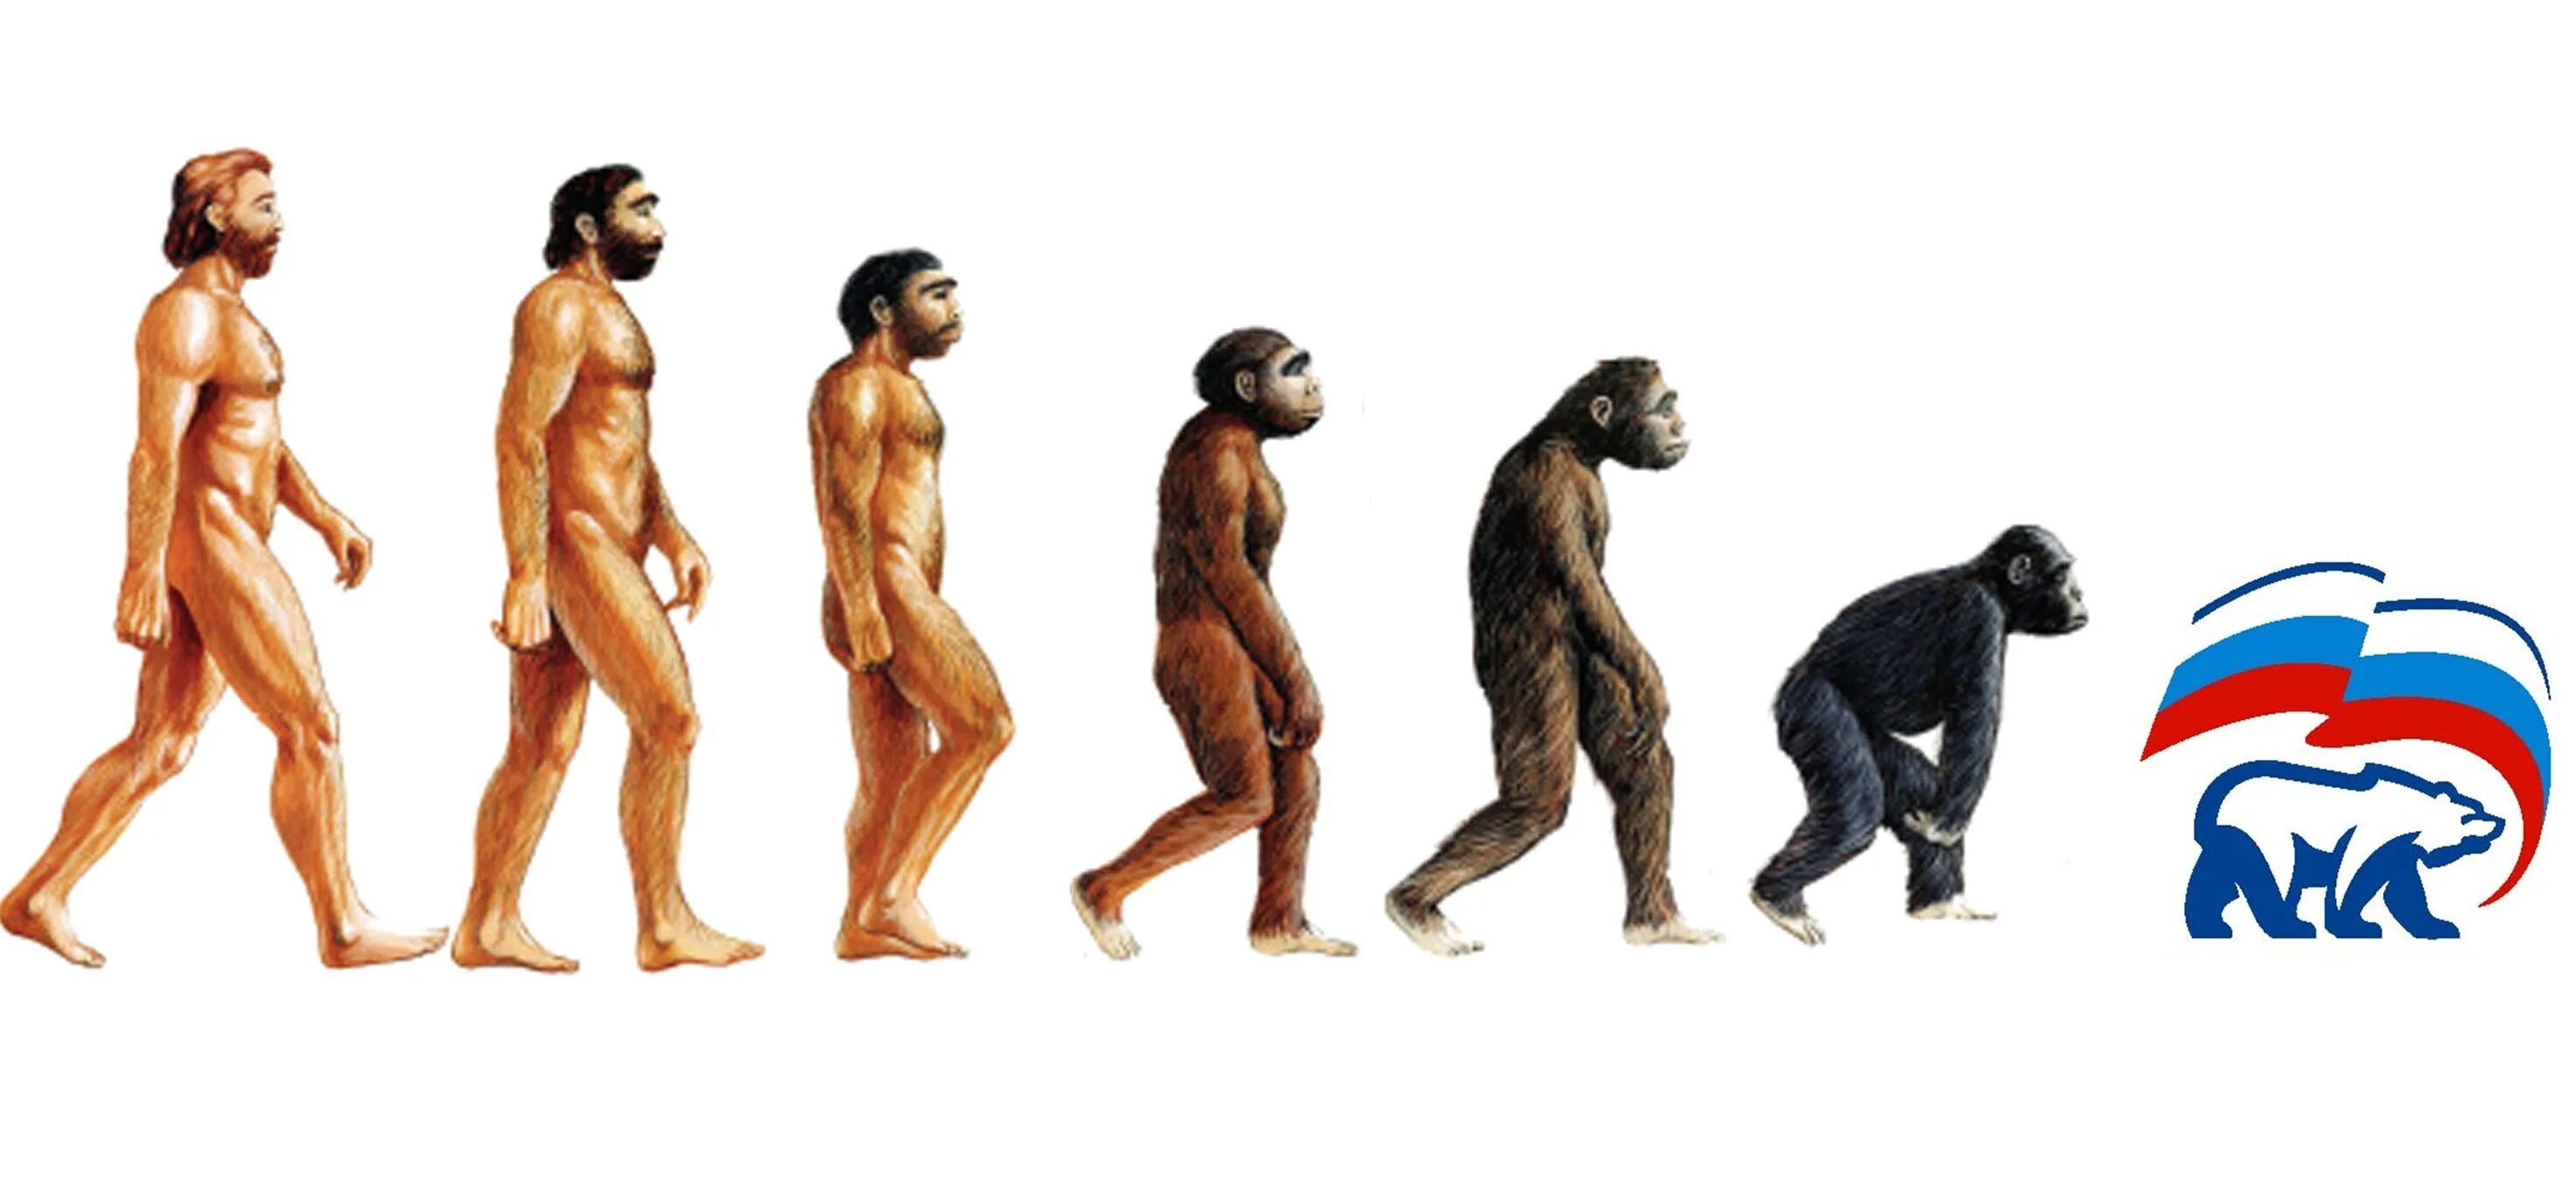 Эволюционирует ли человек. Человек превращается в обезьяну. Эволюция человека. Эволюция и деградация человека. От обезьяны к человеку.